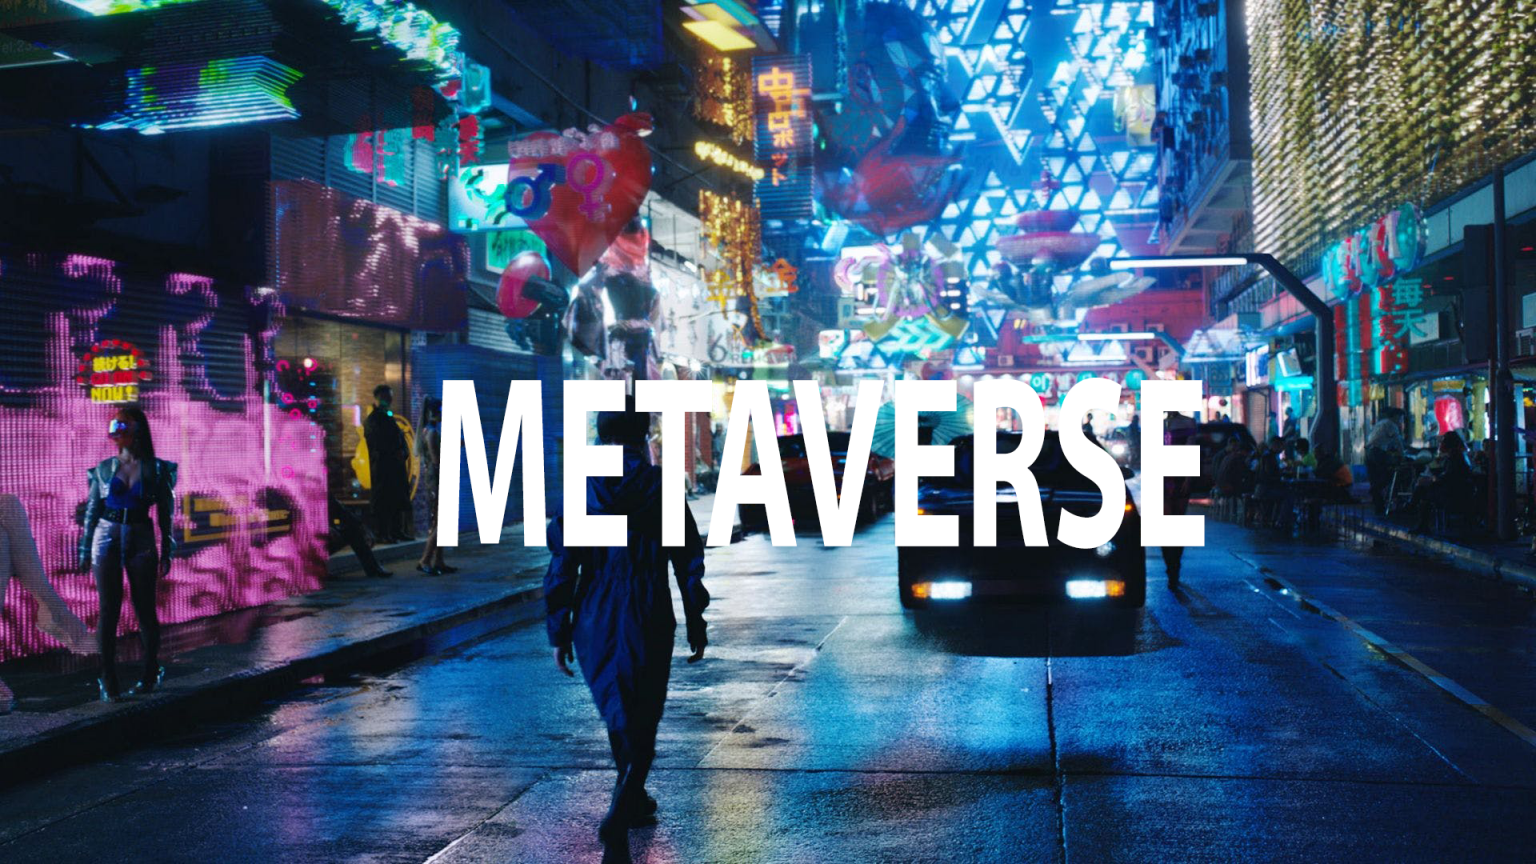 metaverse 03012022 1